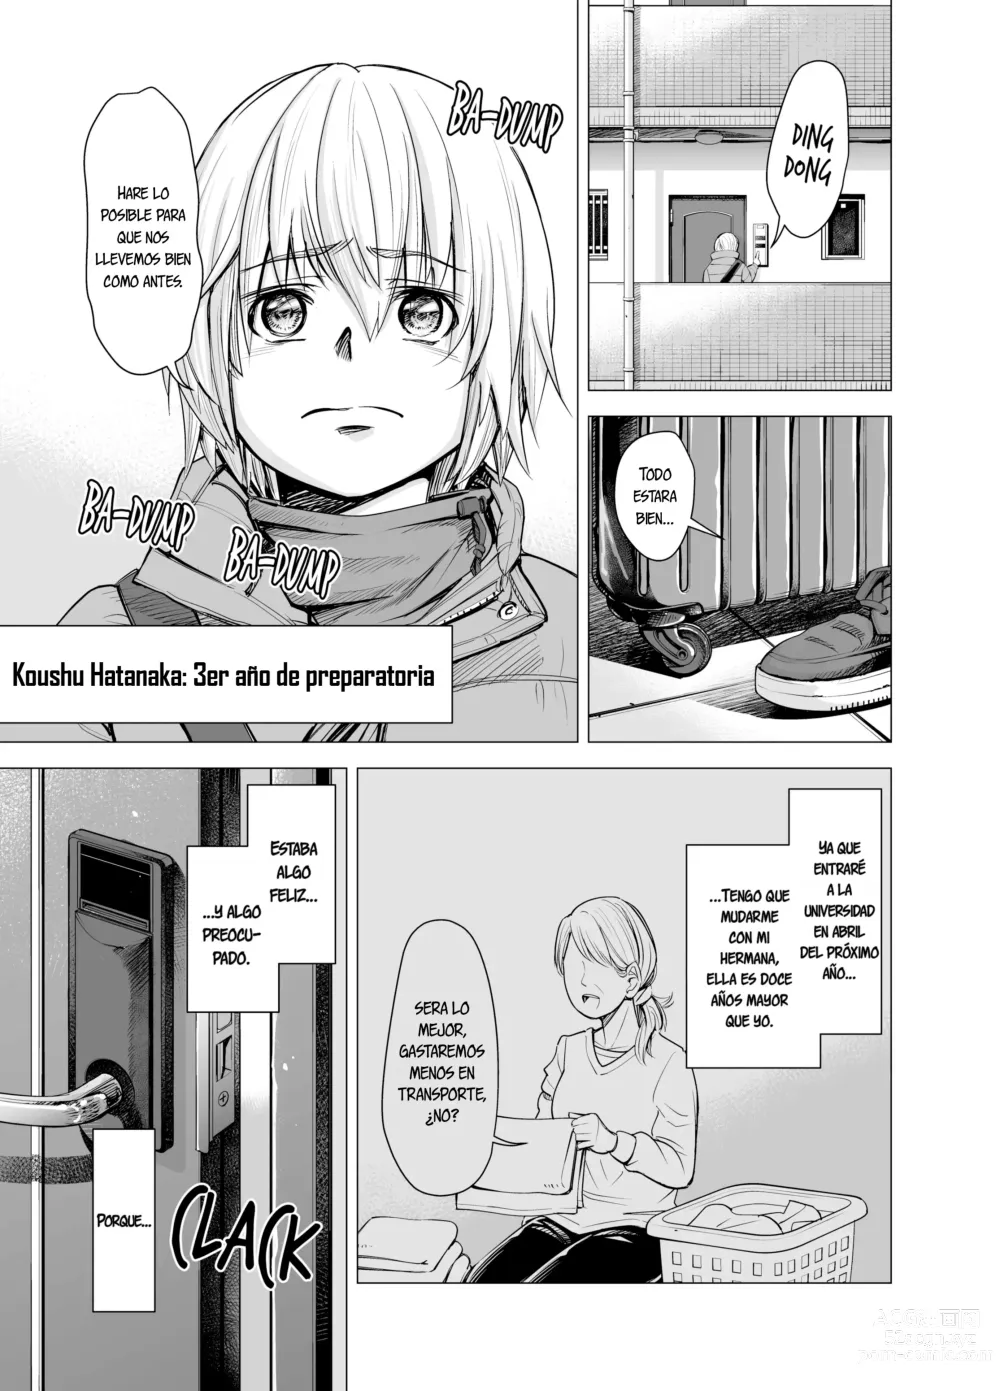 Page 3 of doujinshi Ya no puedo verla como mi hermana (decensored)